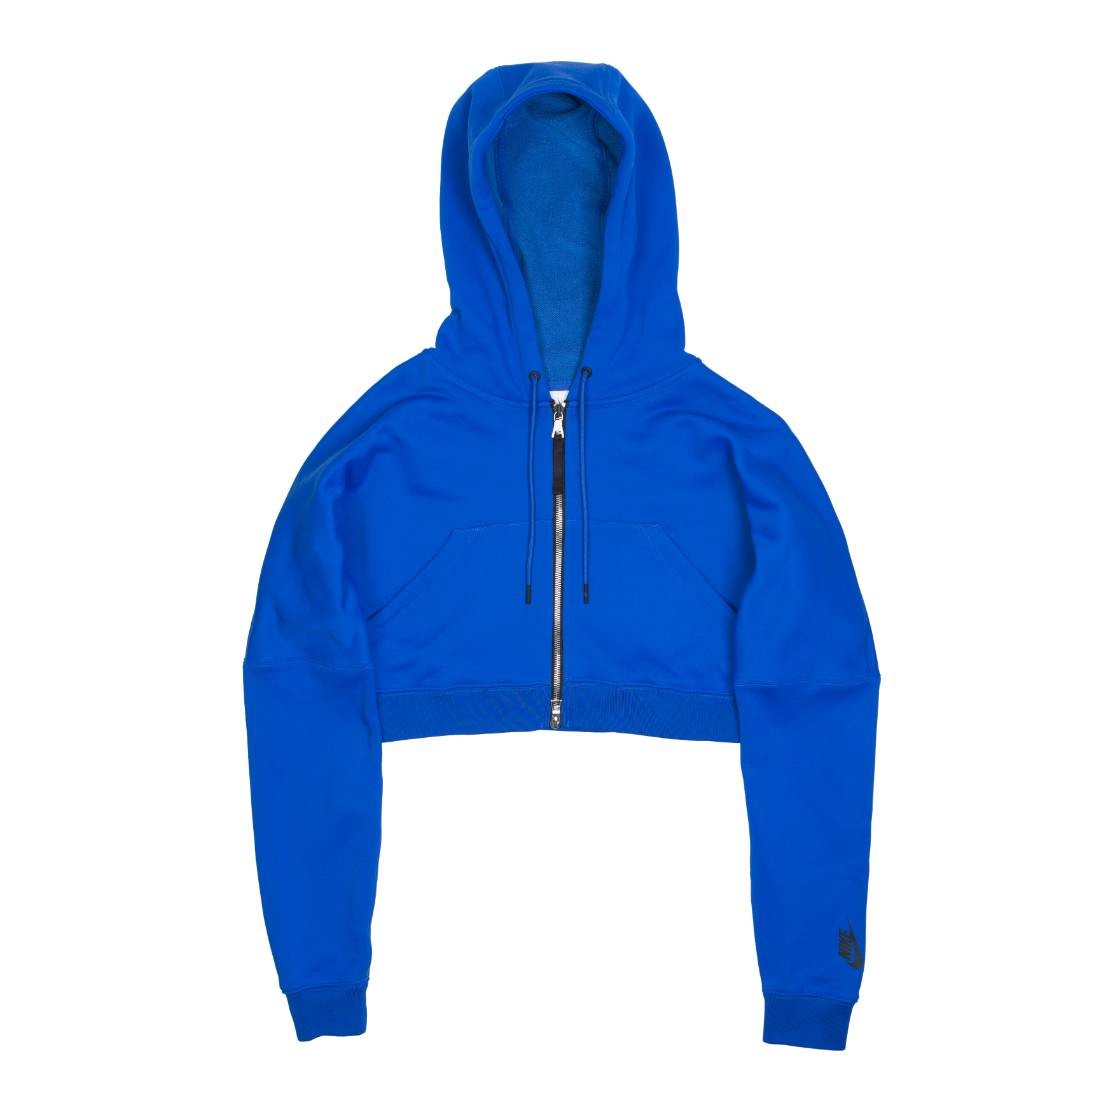 nikelab nrg hoodie blue